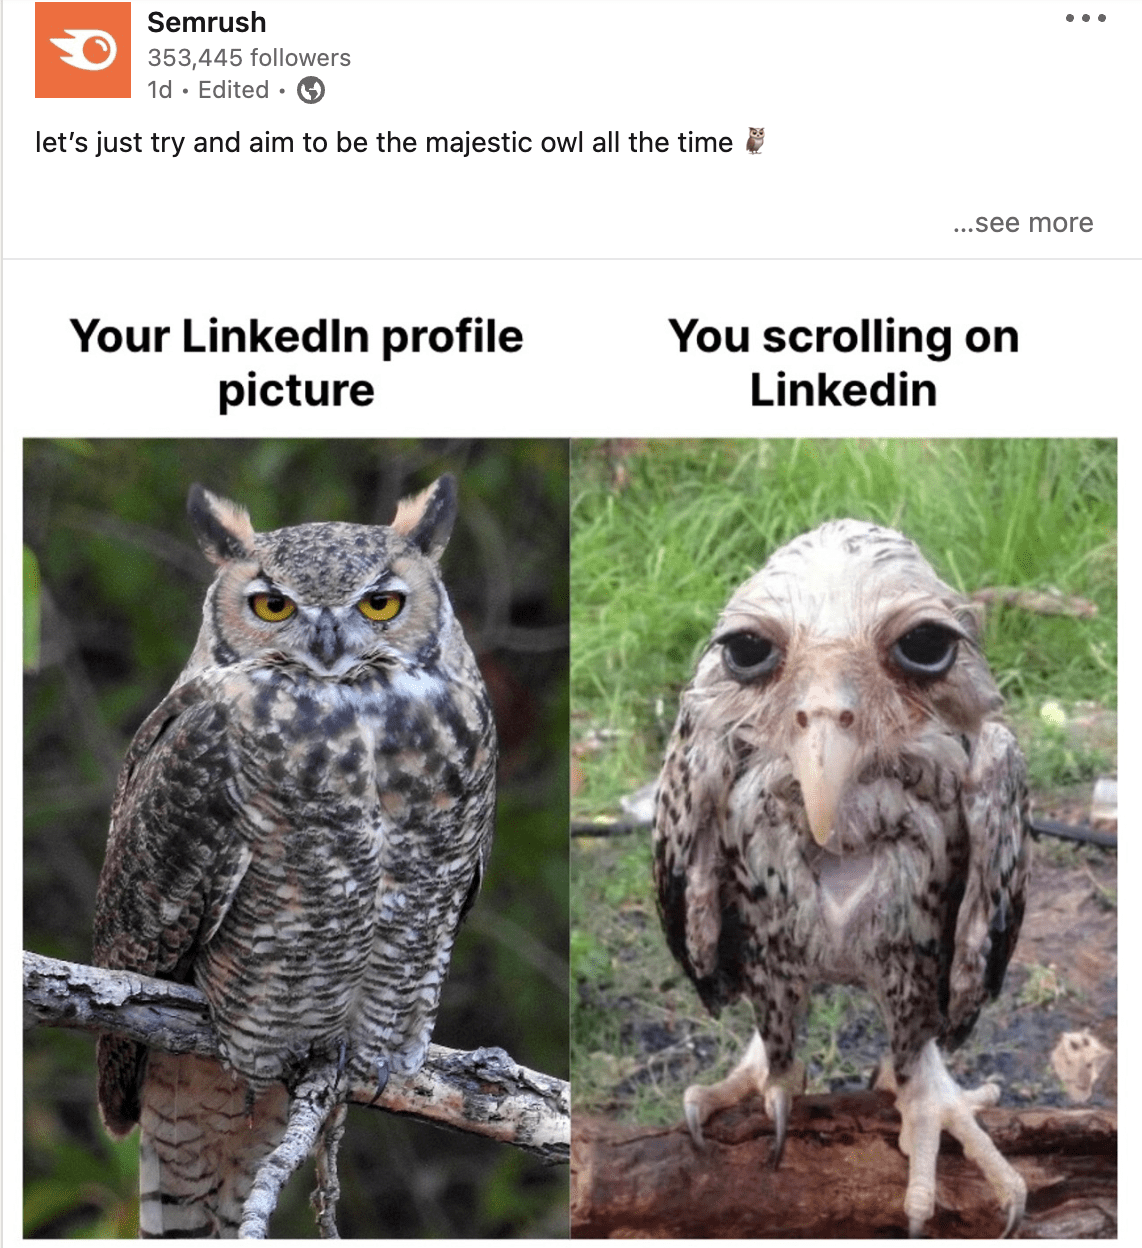 Meme marketing by Semrush on LinkedIn